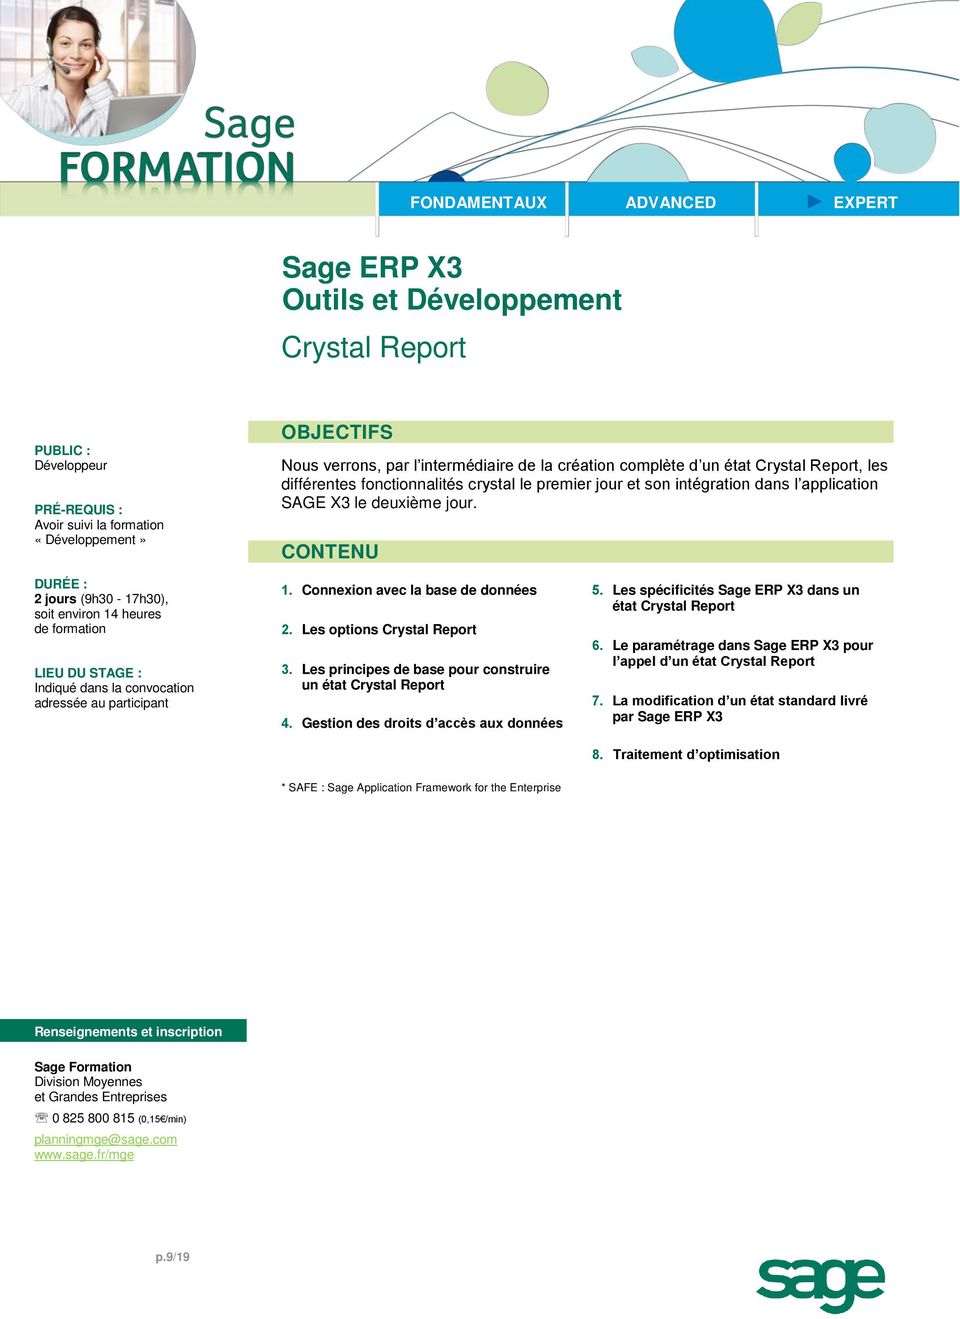 Les options Crystal Report 3. Les principes de base pour construire un état Crystal Report 4. Gestion des droits d accès aux données 5. Les spécificités dans un état Crystal Report 6.